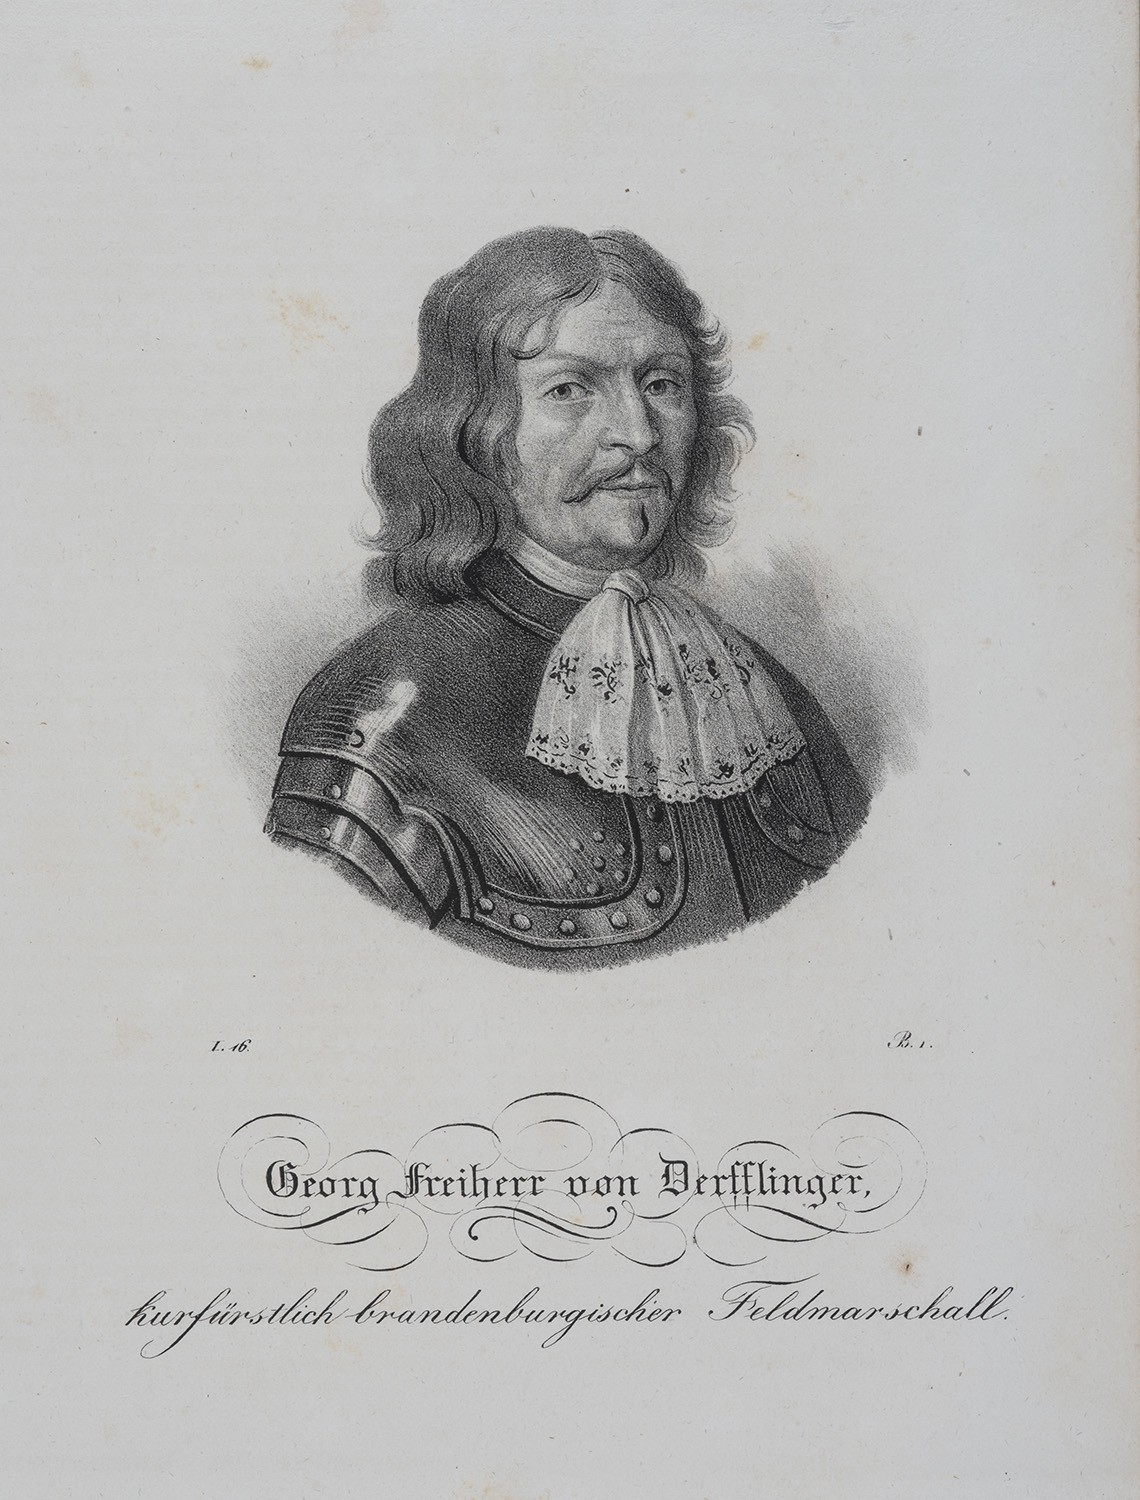 Derfflinger, Georg Frhr. von (1606-1695), Kurfürstlich brand. Generalfeldmarschall (Landesgeschichtliche Vereinigung für die Mark Brandenburg e.V., Archiv CC BY)